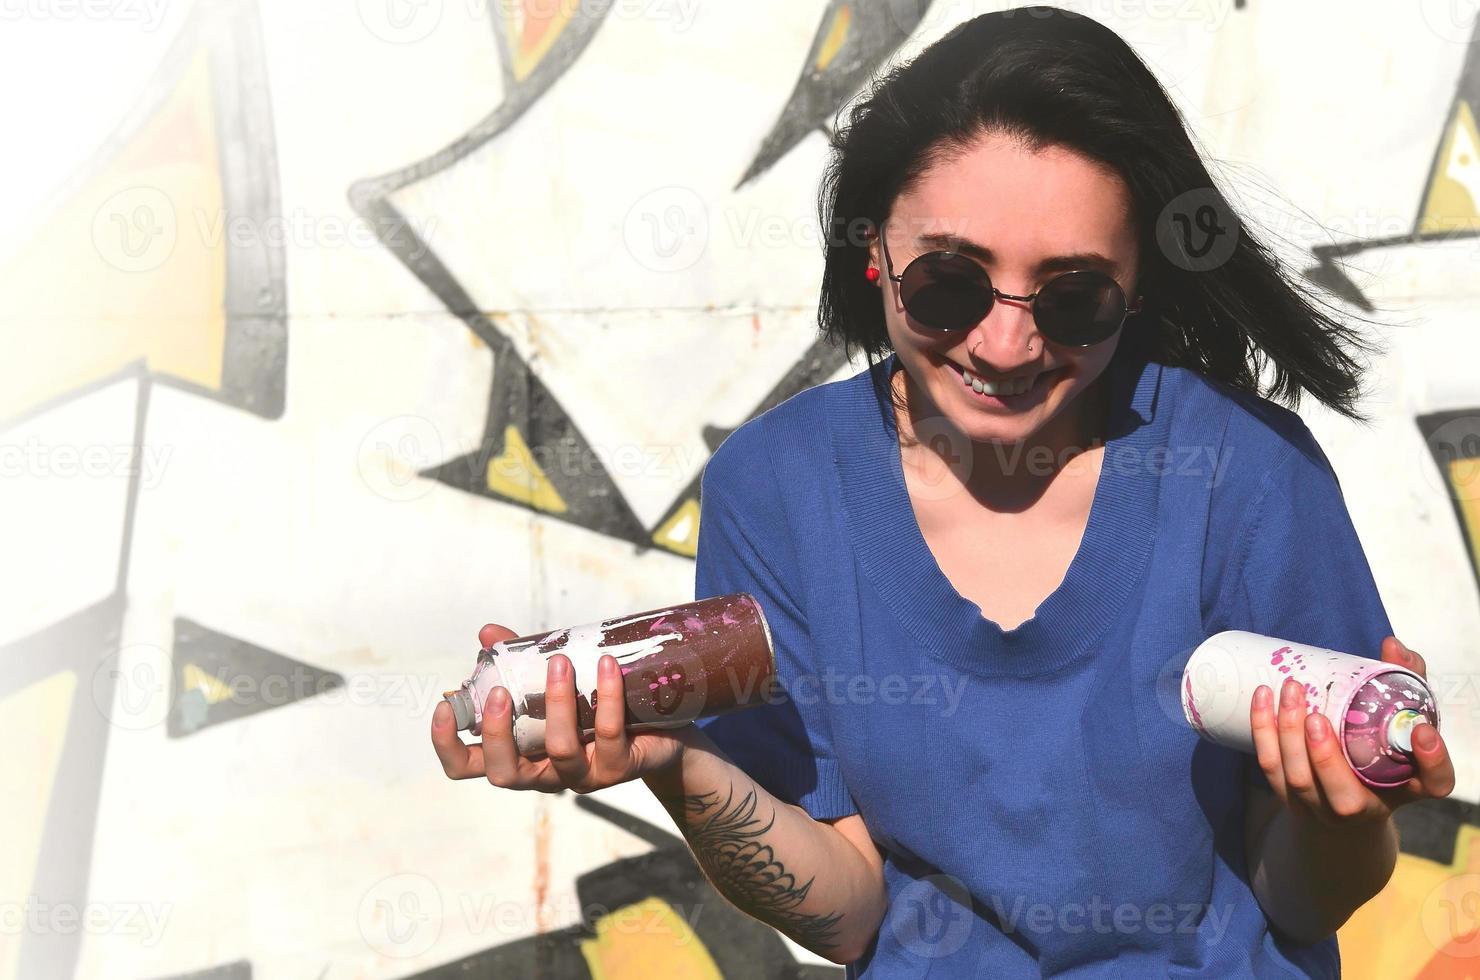 porträtt av ett emotionell ung flicka med svart hår och piercingar. Foto av en flicka med aerosol måla burkar i händer på en graffiti vägg bakgrund. de begrepp av gata konst och använda sig av av aerosol målarfärger